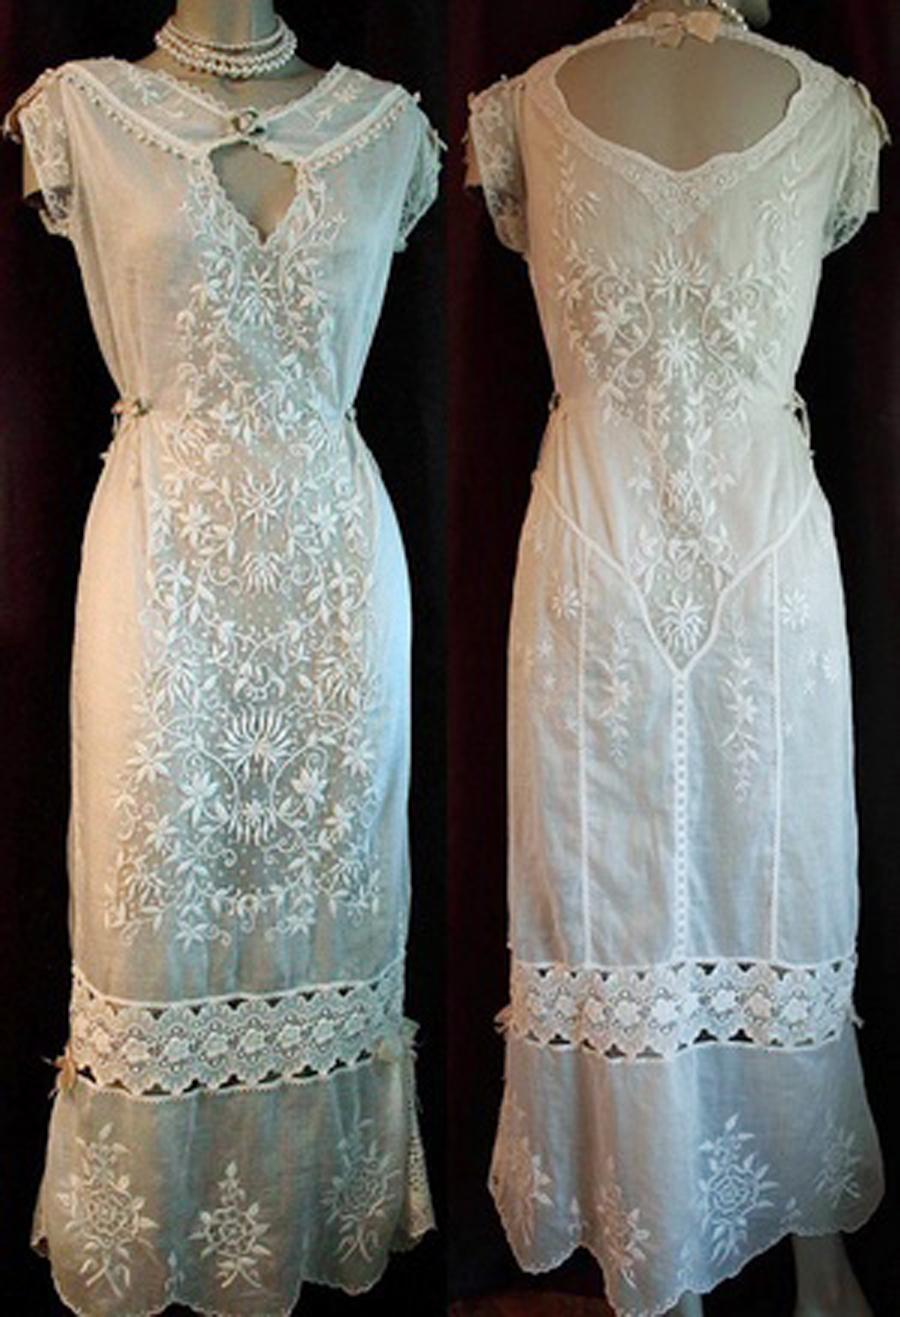 Romantische Boudoir-Kleider aus dem frühen 20. Jahrhundert sind ein Dauerbrenner, und dieses Kleid ist ein echter Hingucker. Der mühelose Stil des Kleidungsstücks ist so modern, dass die feinen Stickereien und gemischten Spitzen eine Fundgrube der